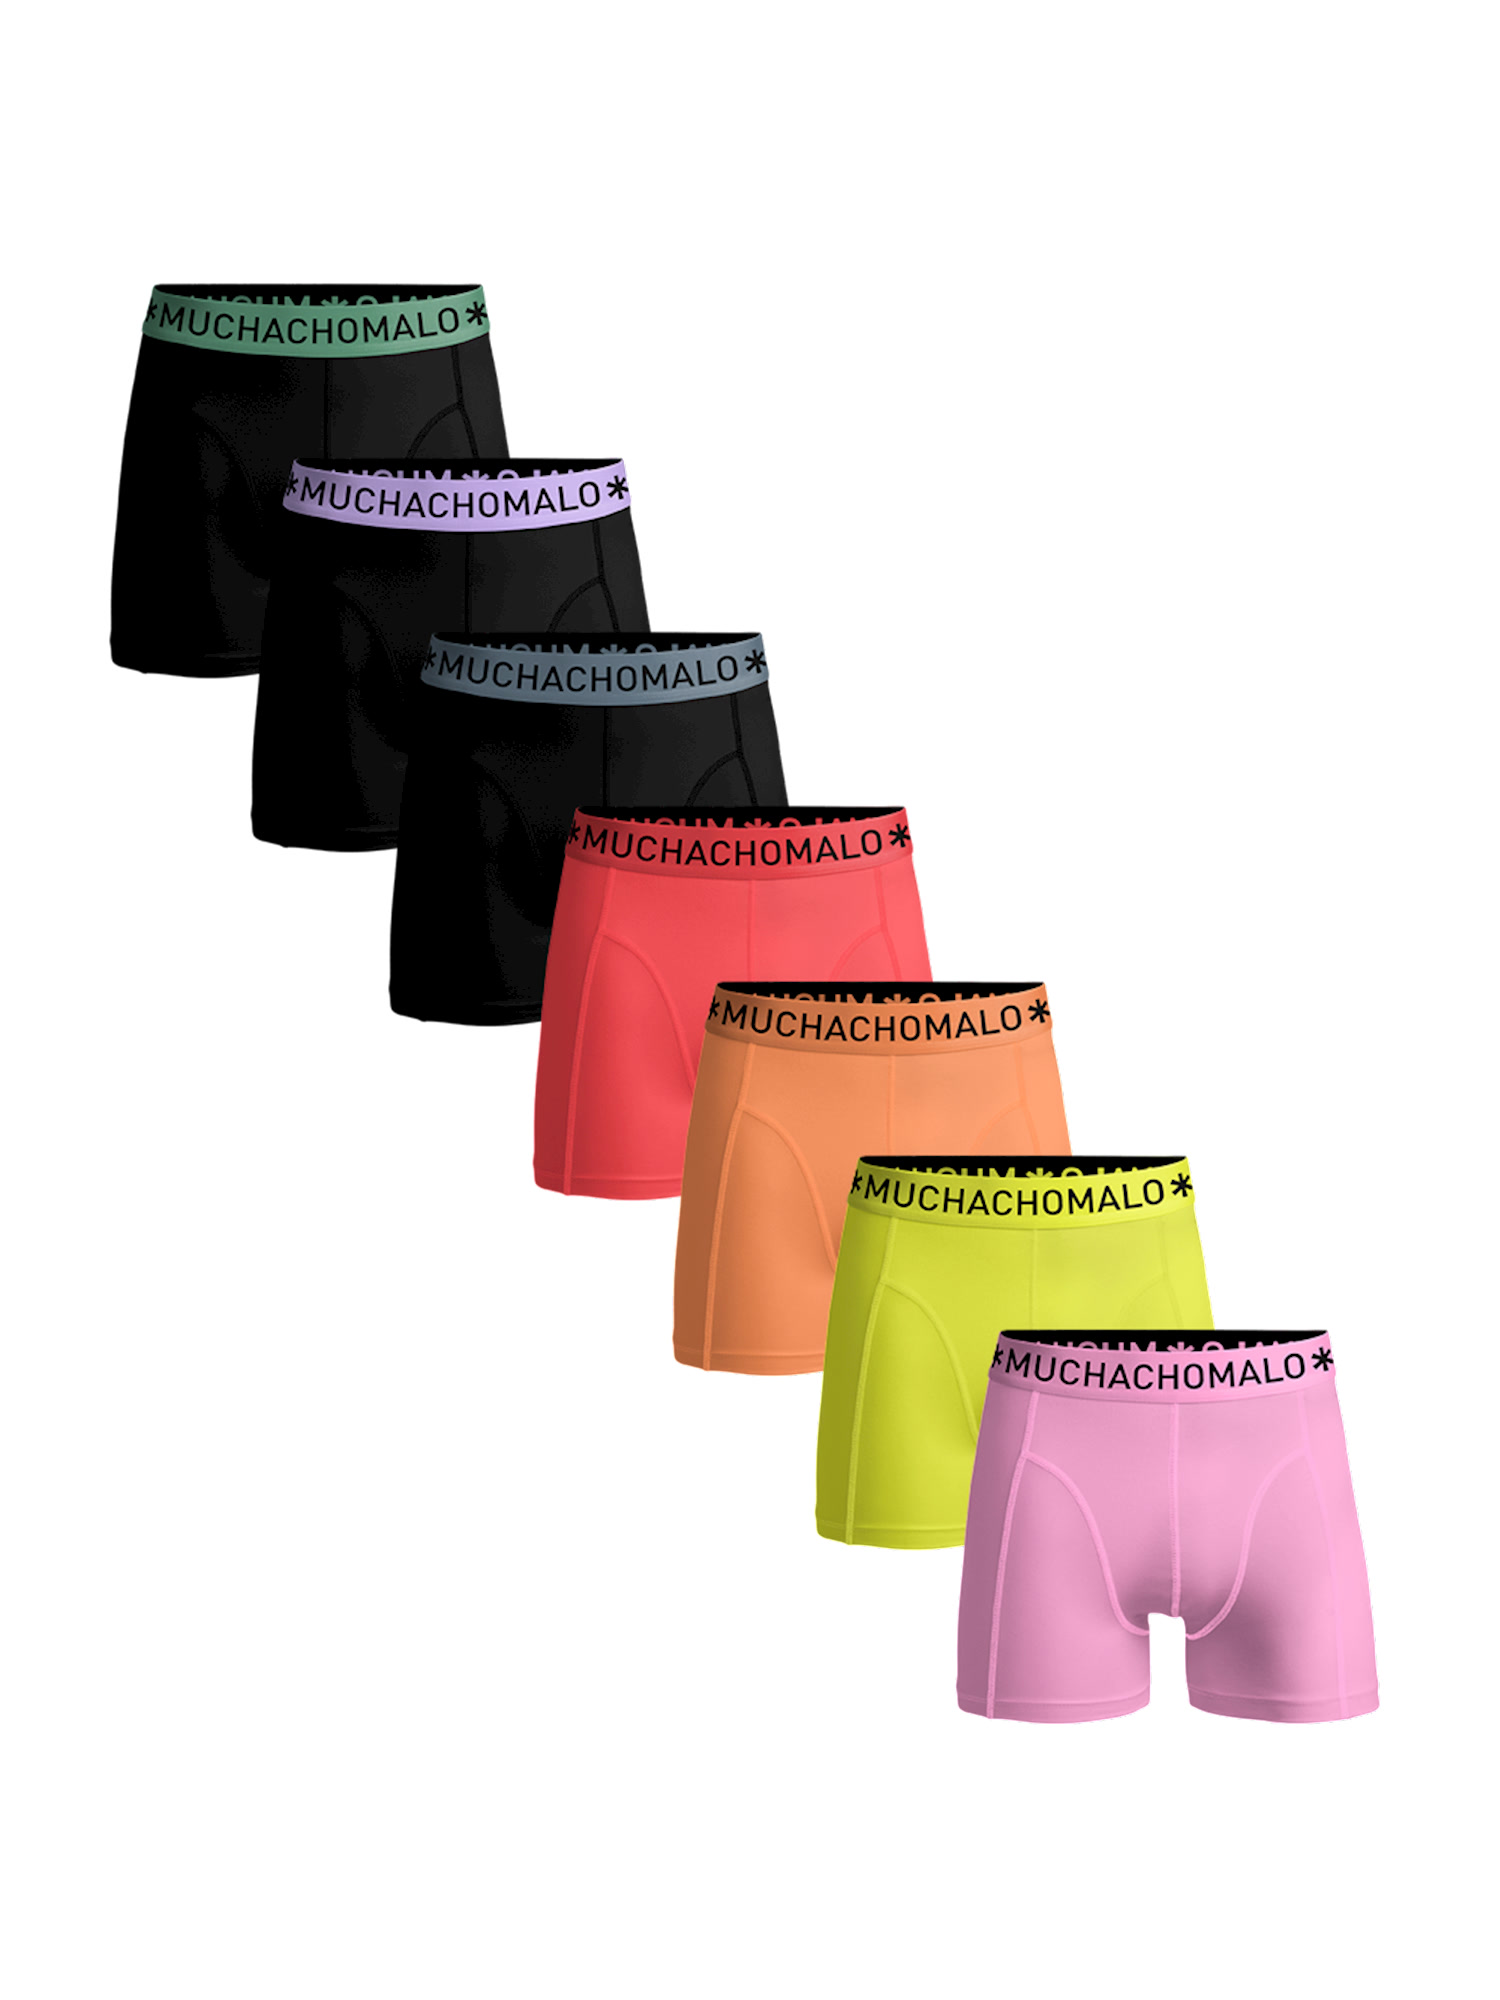 gravity black pink Боксеры Muchachomalo 7er-Set: Boxershorts, цвет Black/Black/Black/Pink/Orange/Yellow/Pink